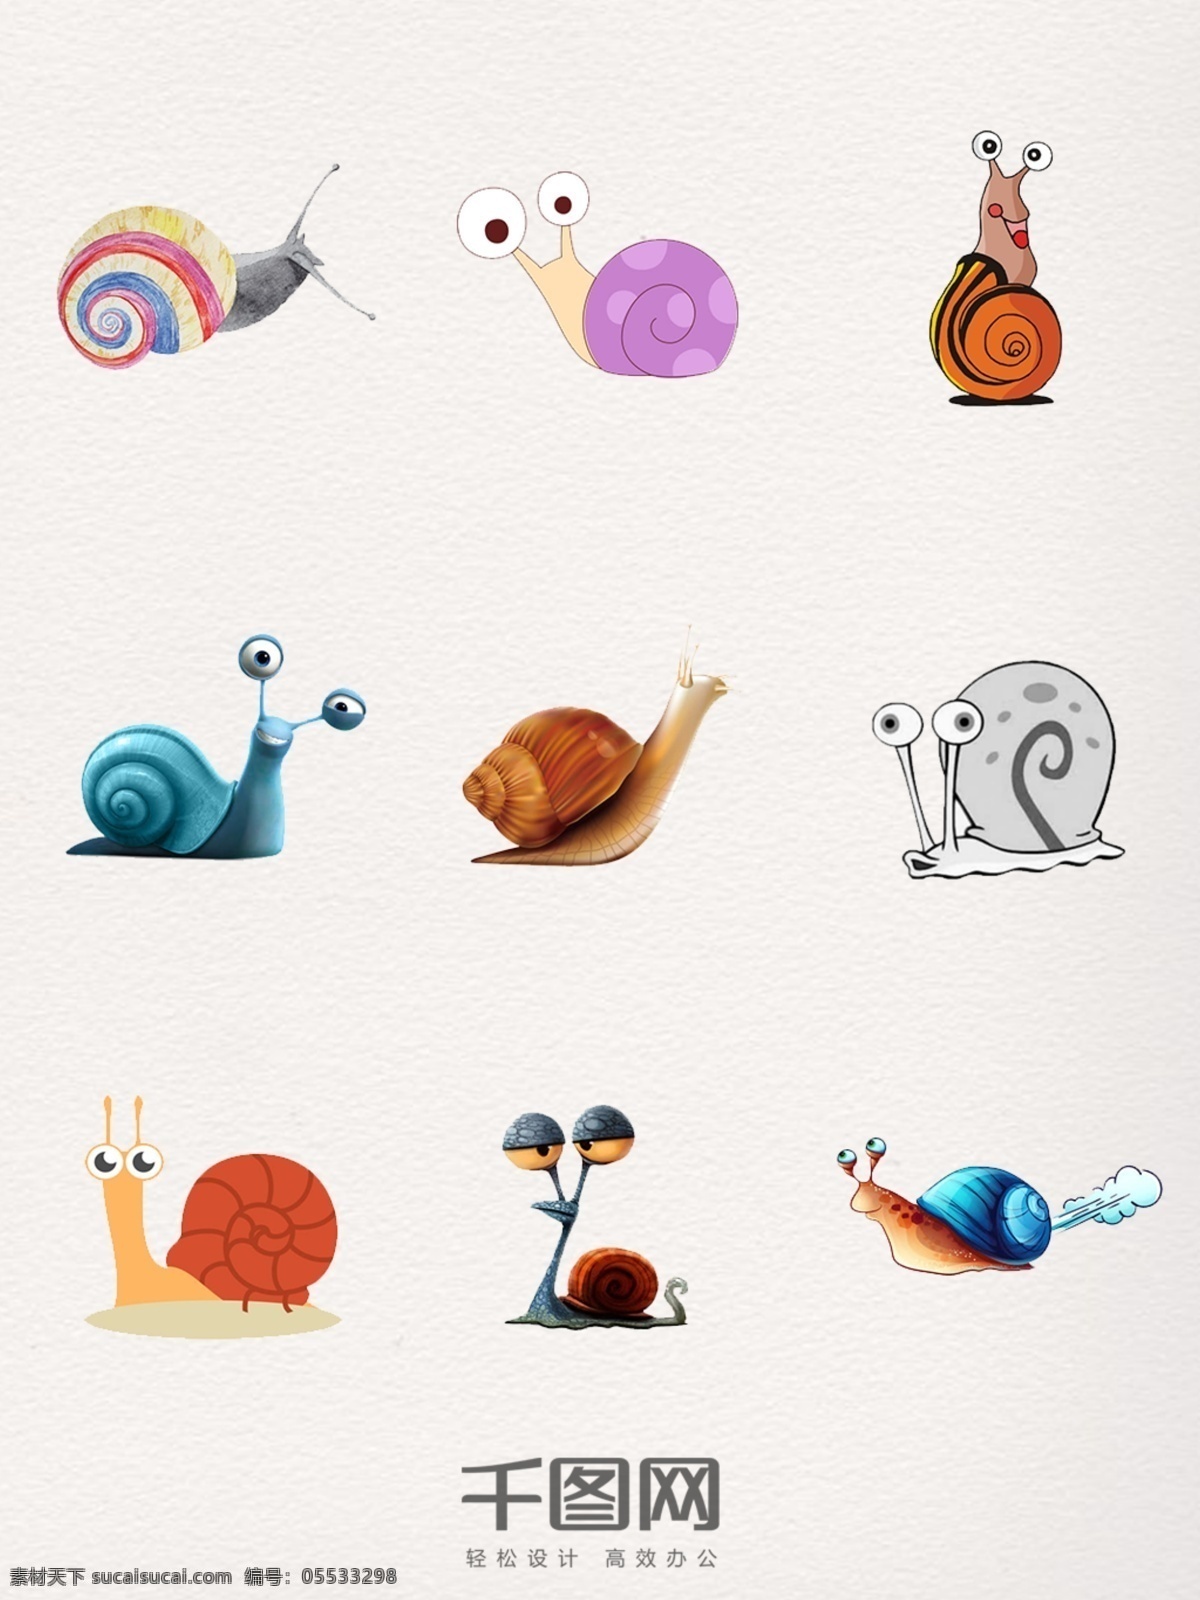 蜗牛 元素 装饰 图案 蜗牛装饰 蜗牛图案 蜗牛设计 蜗牛元素 蜗牛素材 蜗牛卡通 蜗牛图片